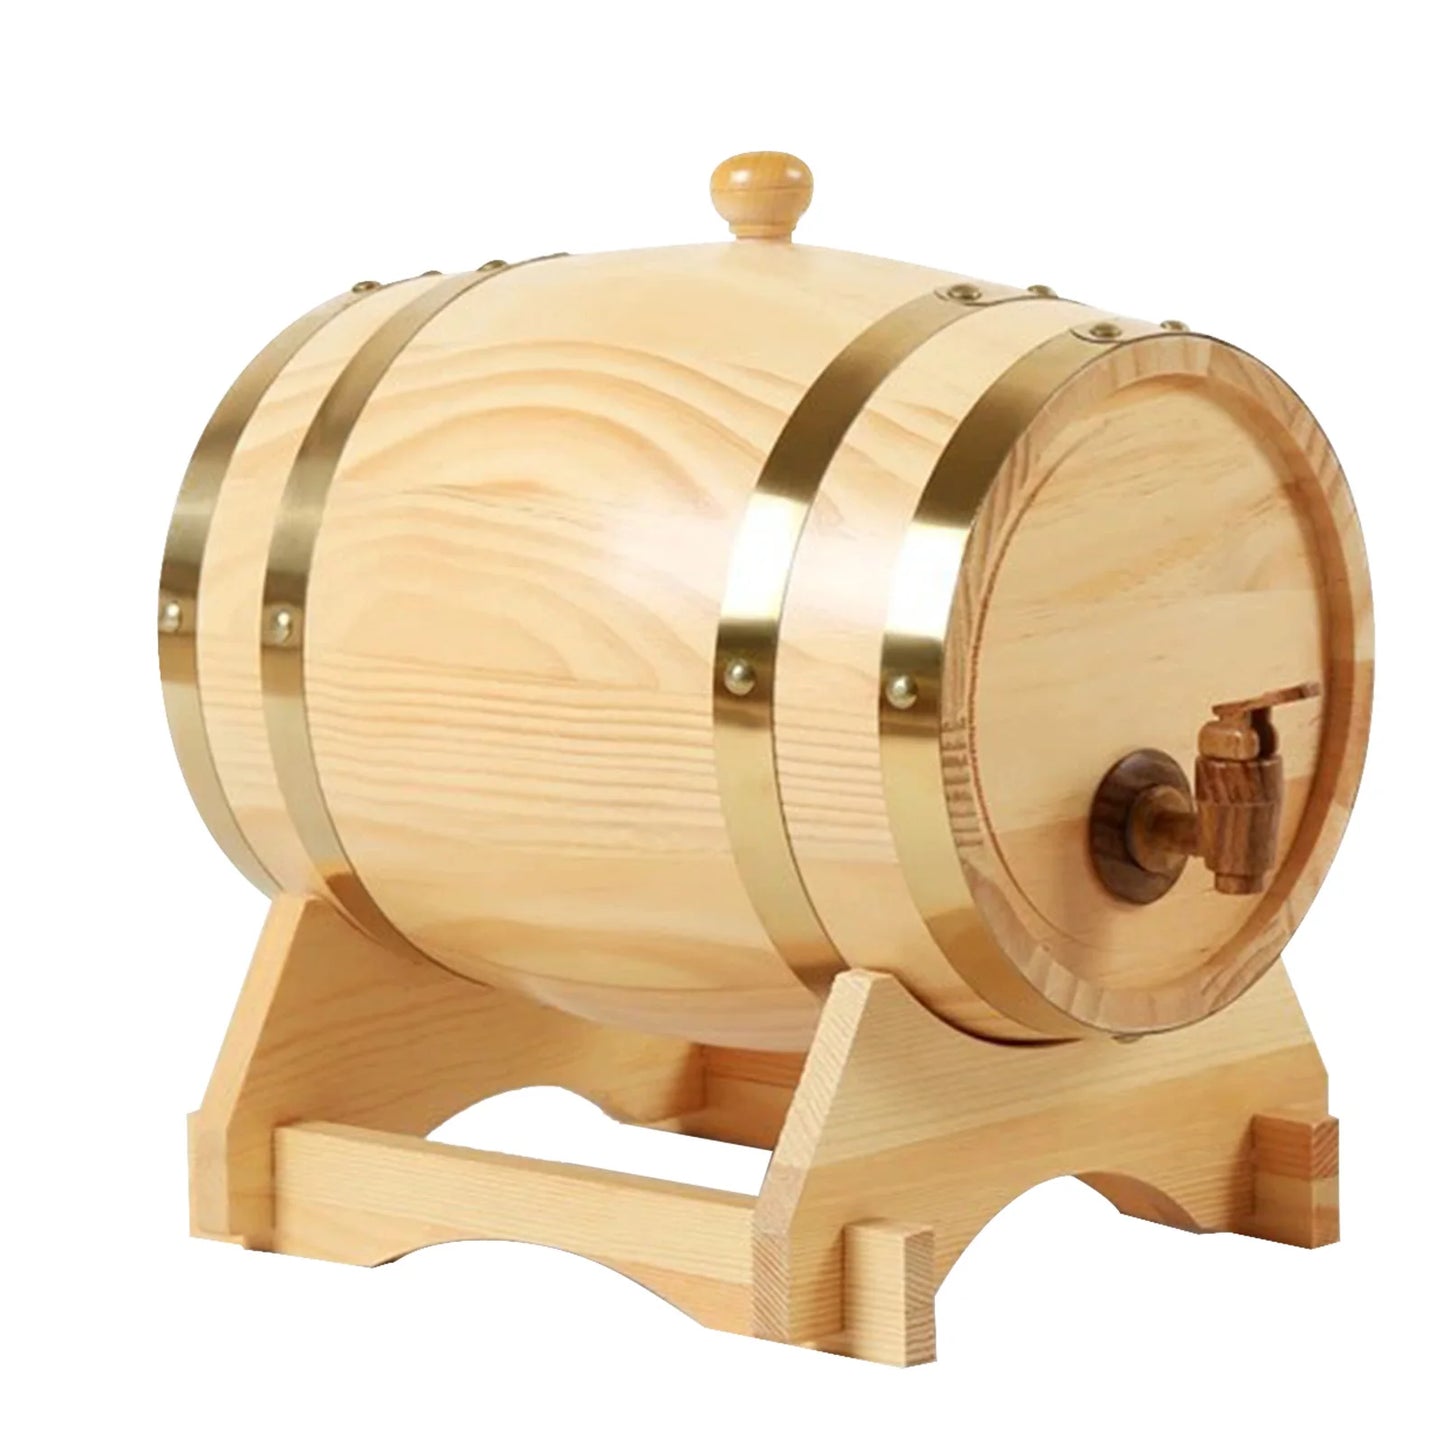 Vintage Wood Oak Timber Wine Barrel for Beer Whiskey Rum Port Reusable Bar Tools Bucket Brewage Decorative Wine Barrel